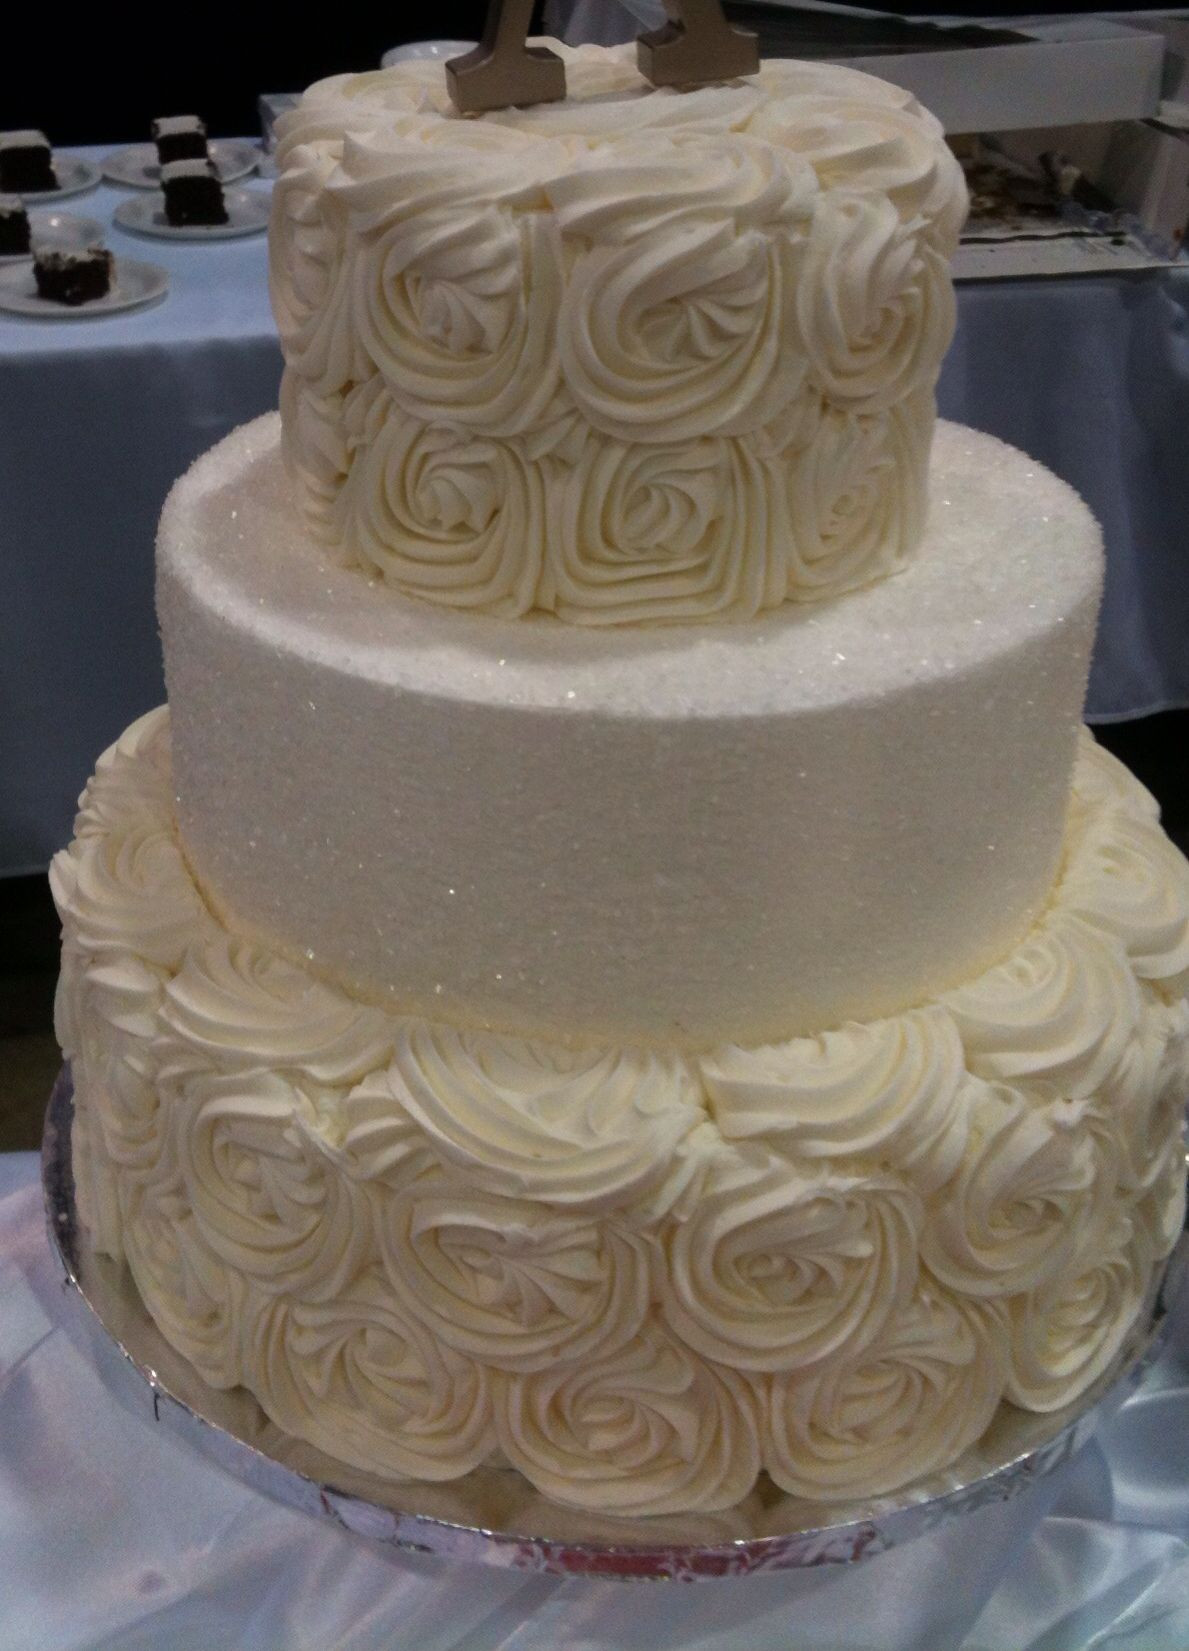 3 Tier Wedding Cakes At Walmart
 My wedding cake Find it at Walmart